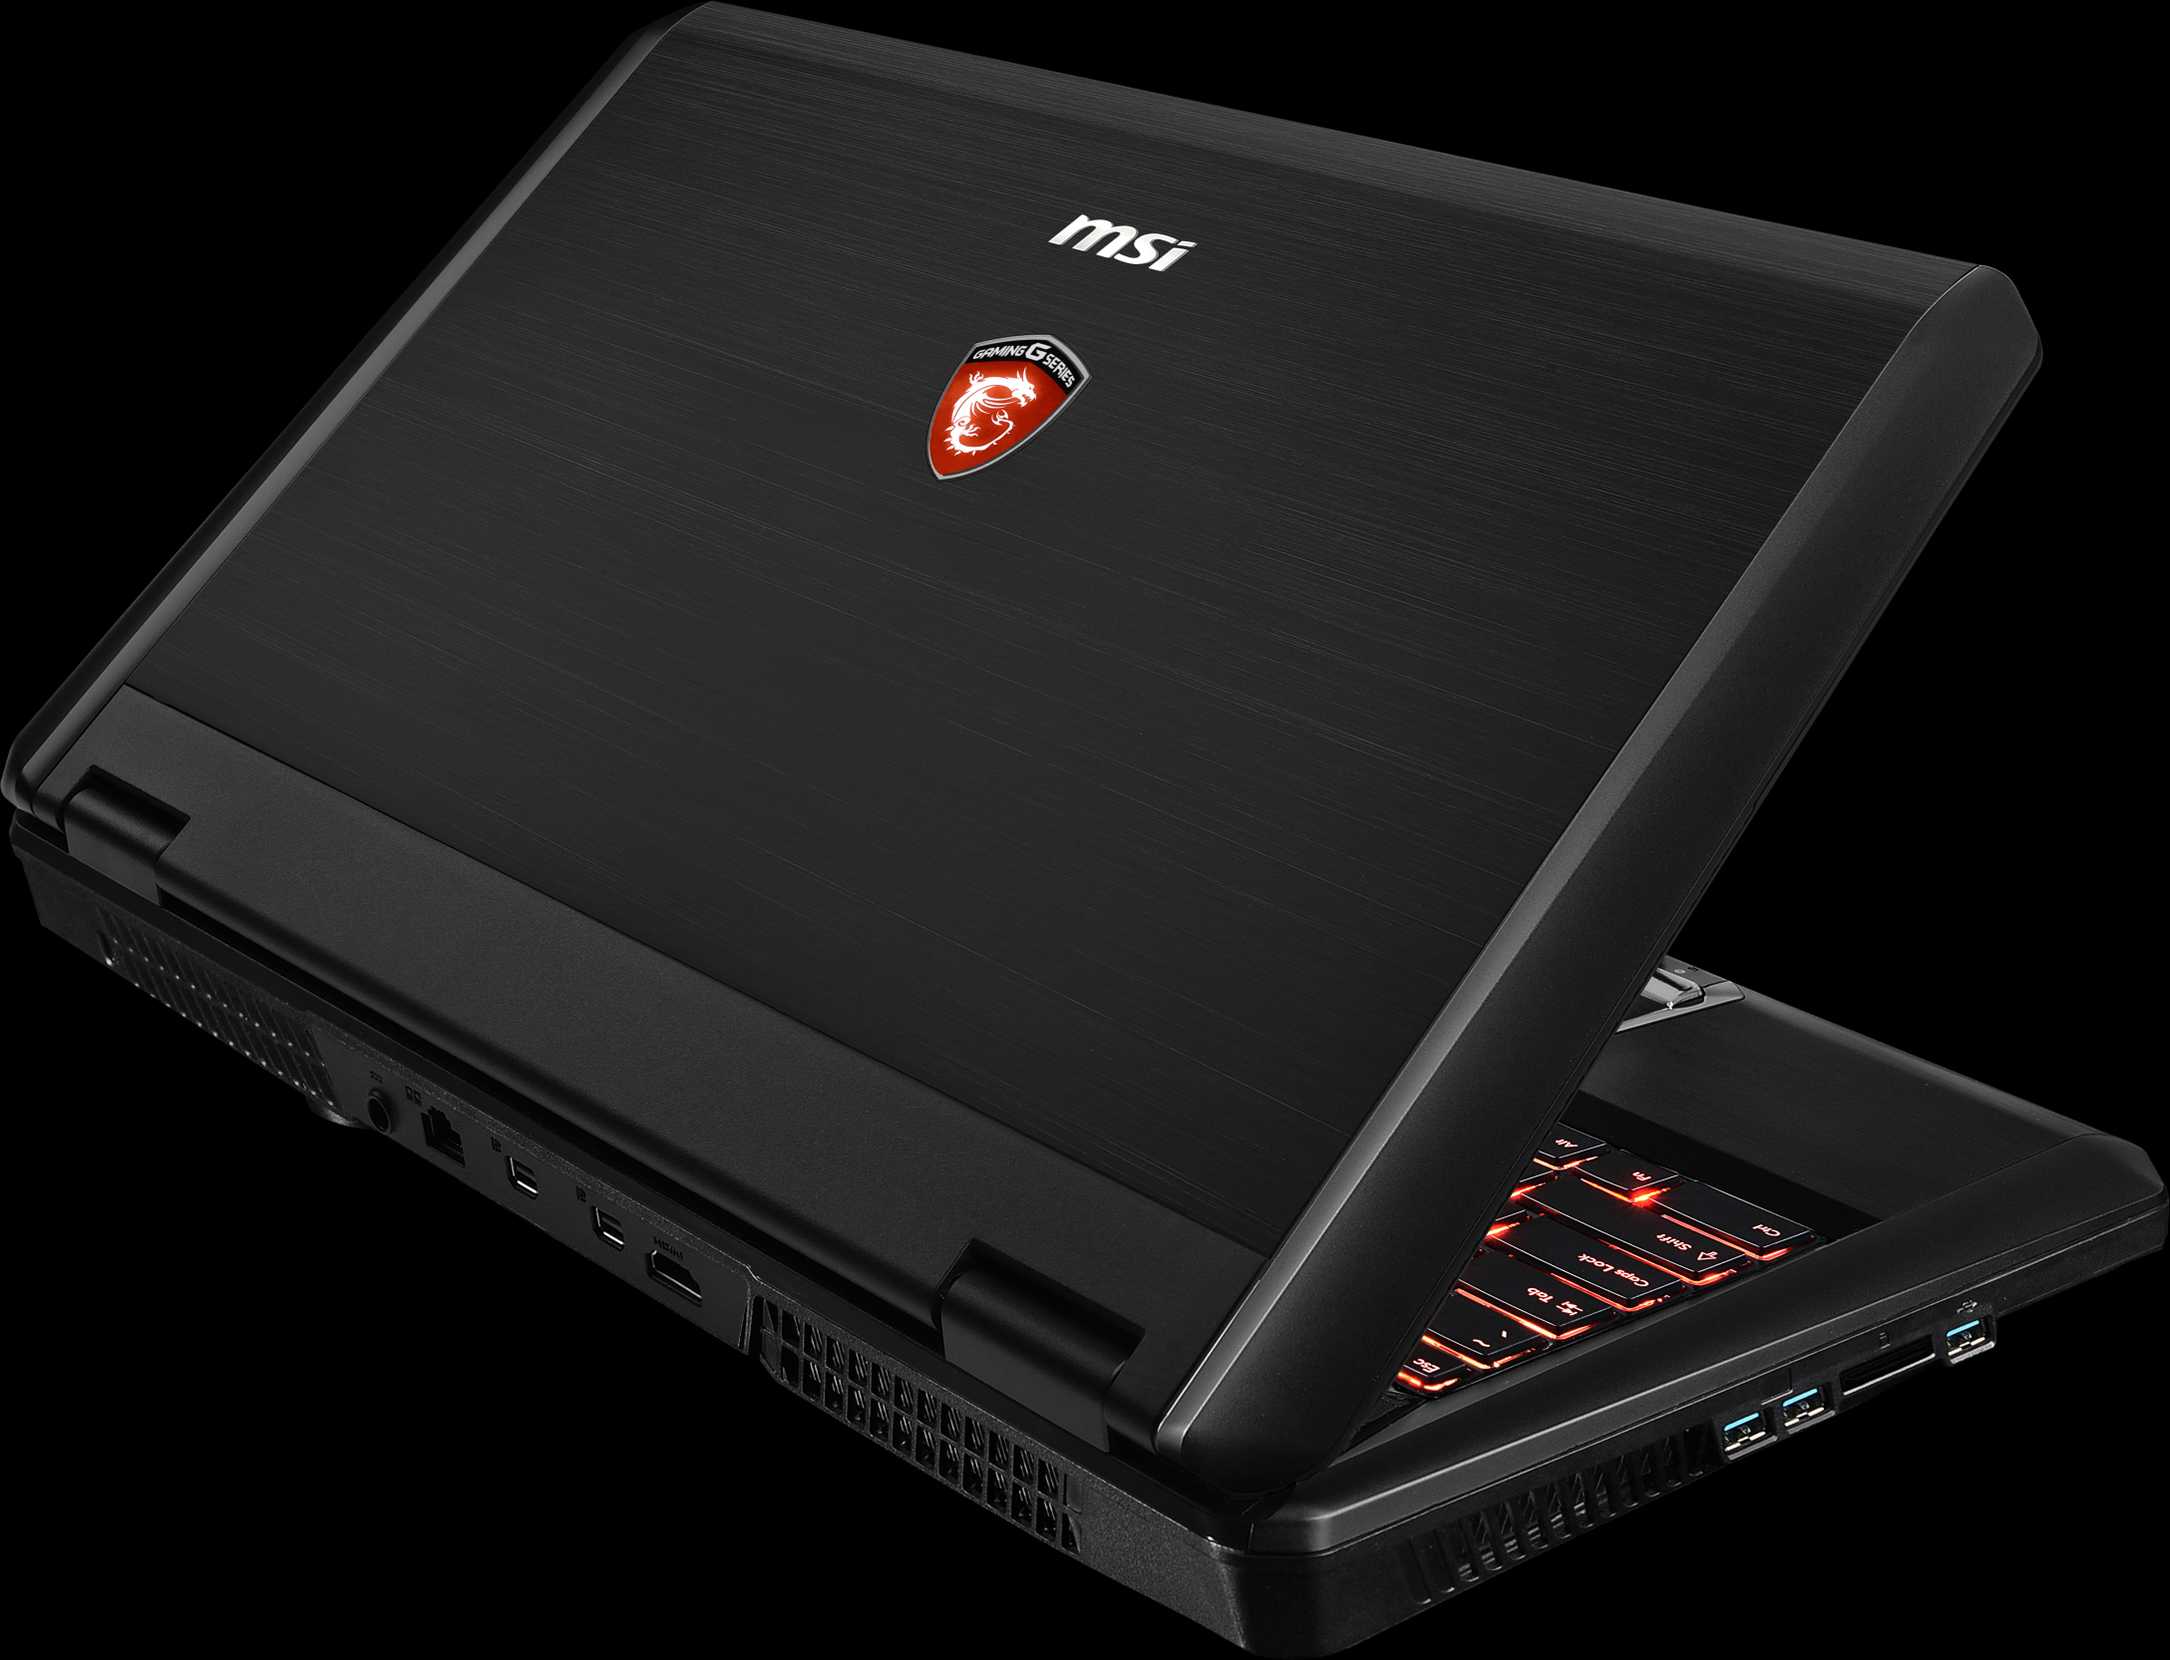 Ноутбук msi gaming (gt-серия) gt70 2pe dominator pro (9s7-176315-1877) — купить, цена и характеристики, отзывы